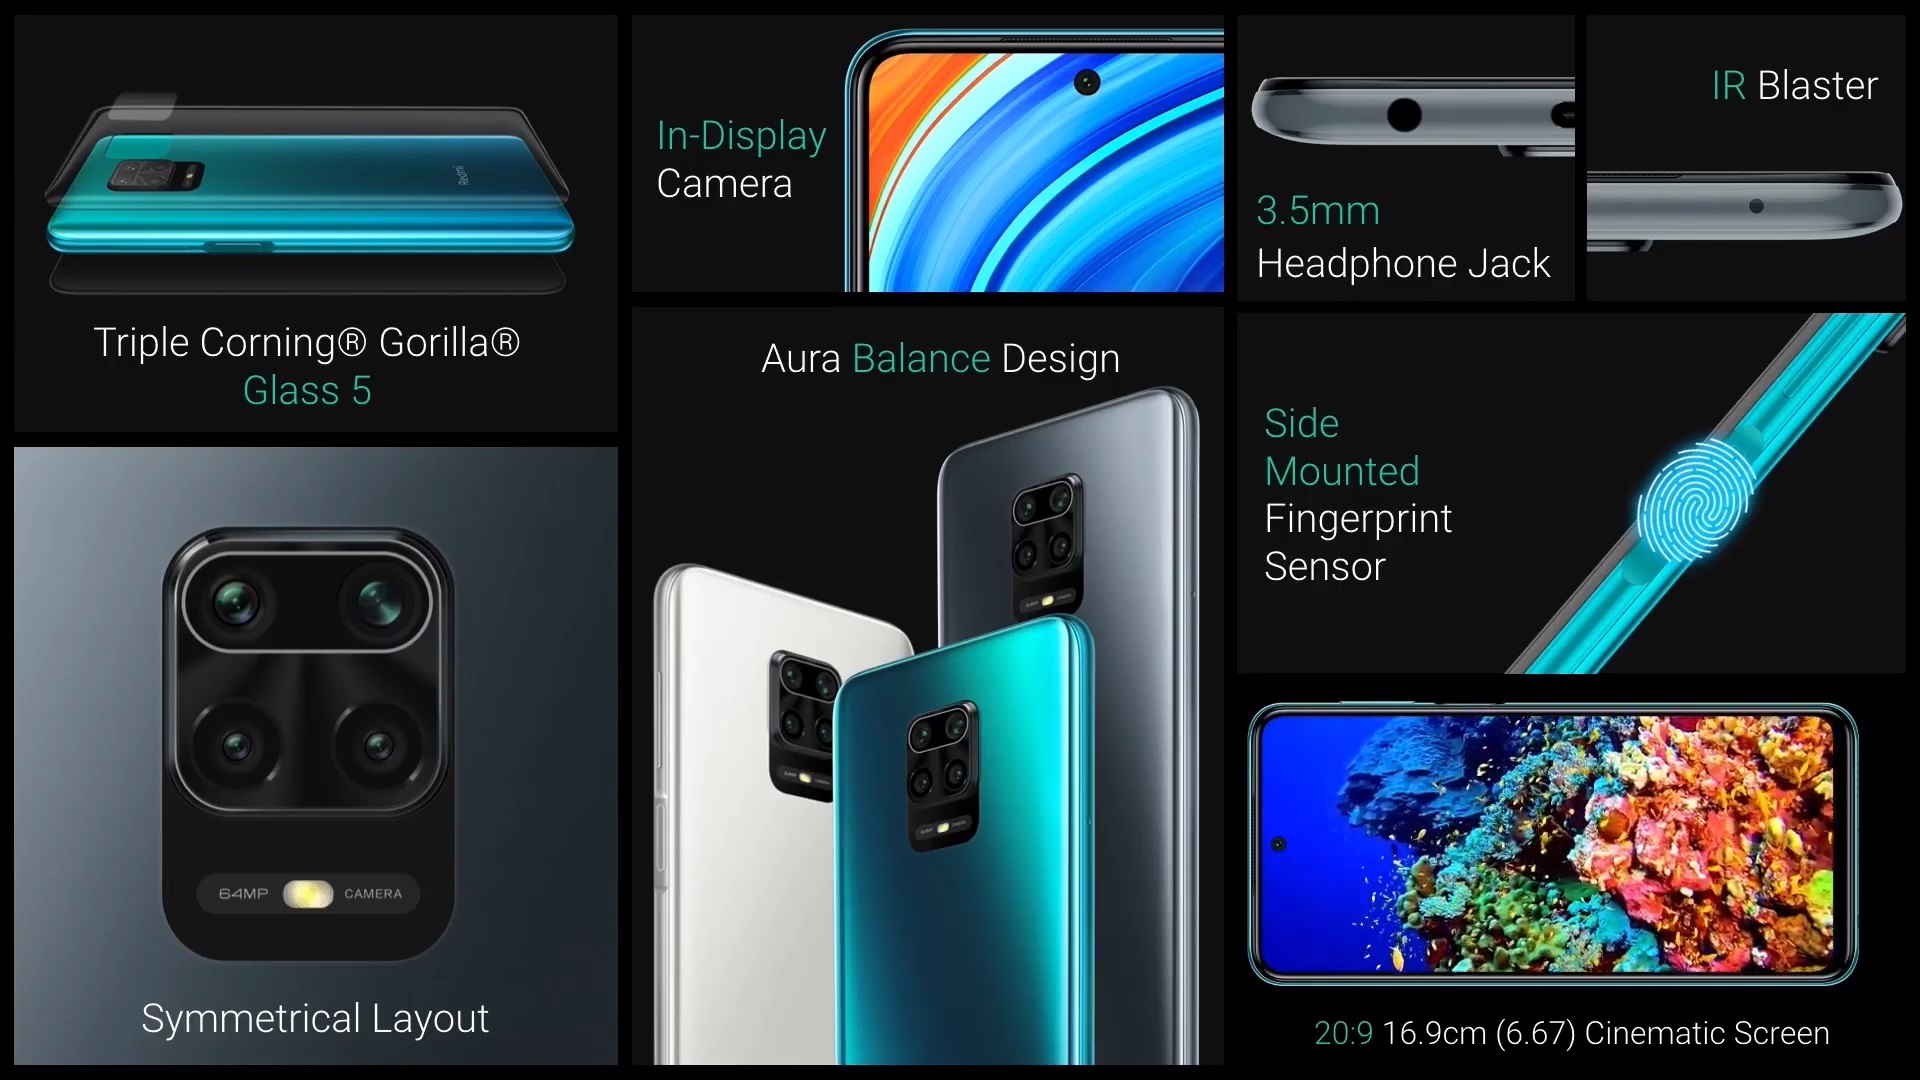 Redmi Note 9 Pro Max smartphone